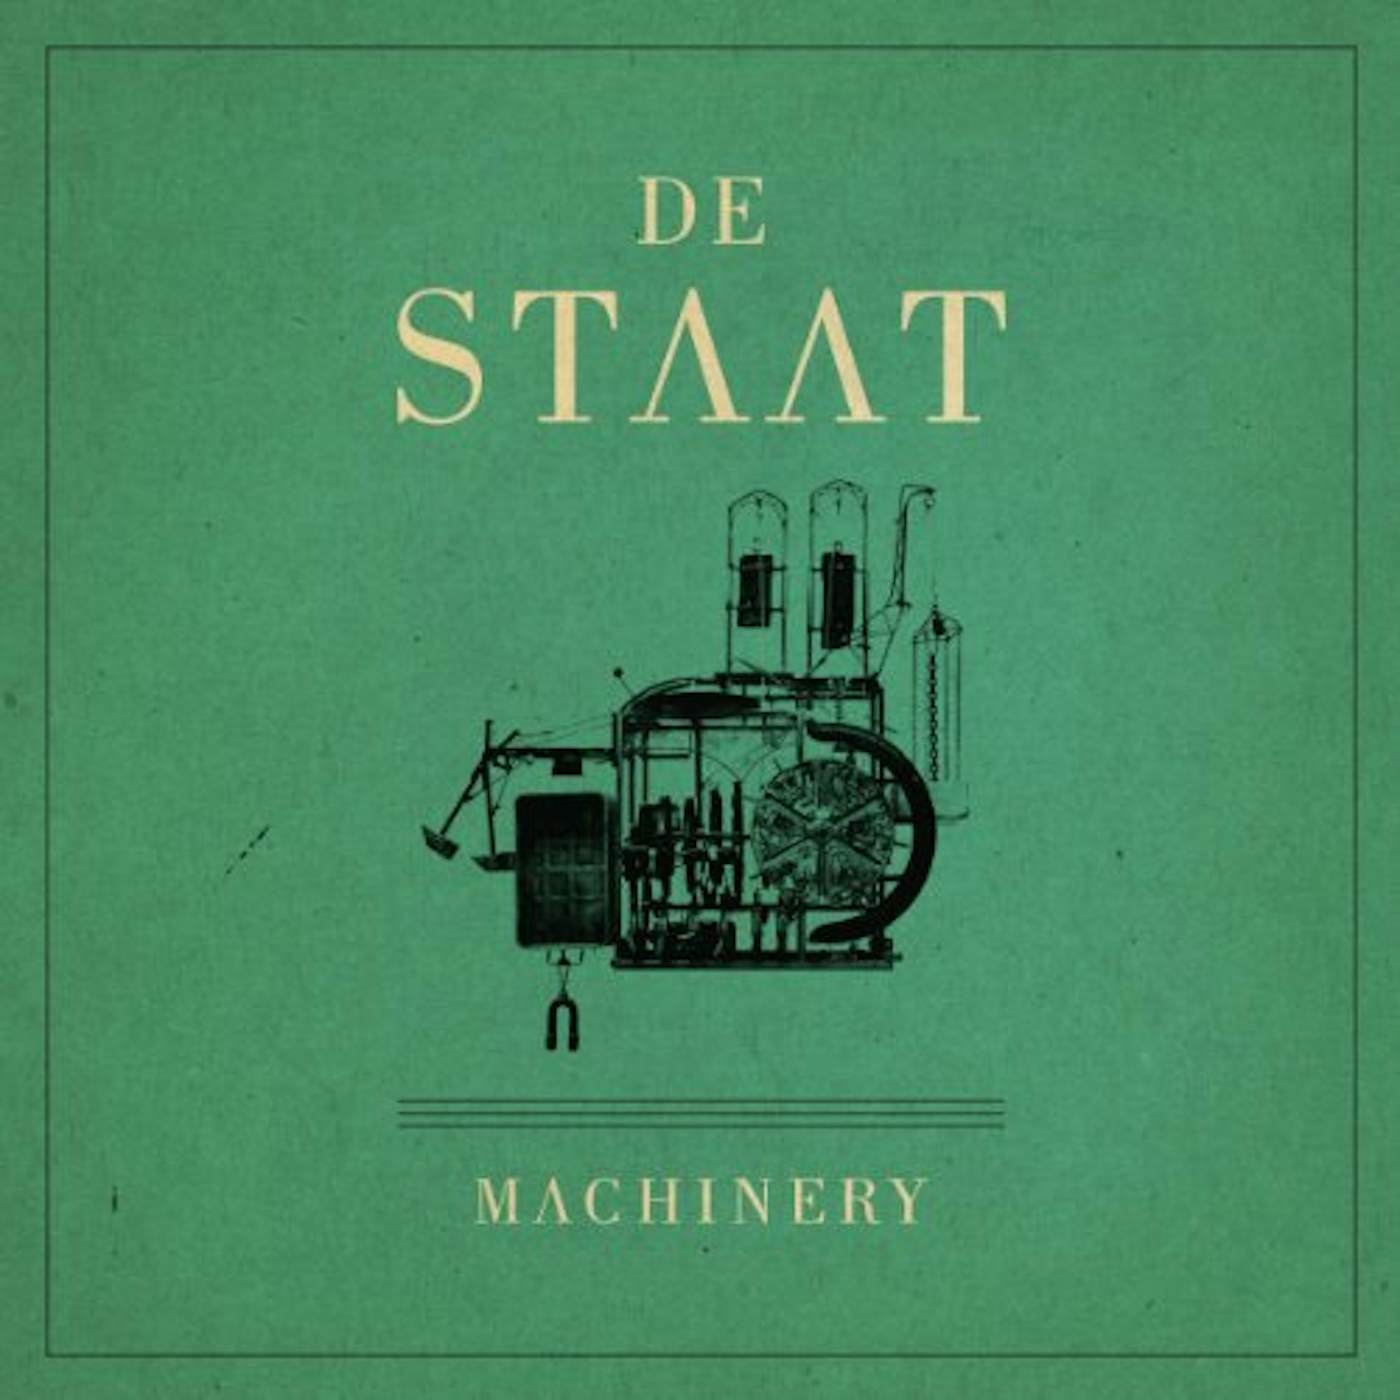 De Staat Machinery Vinyl Record